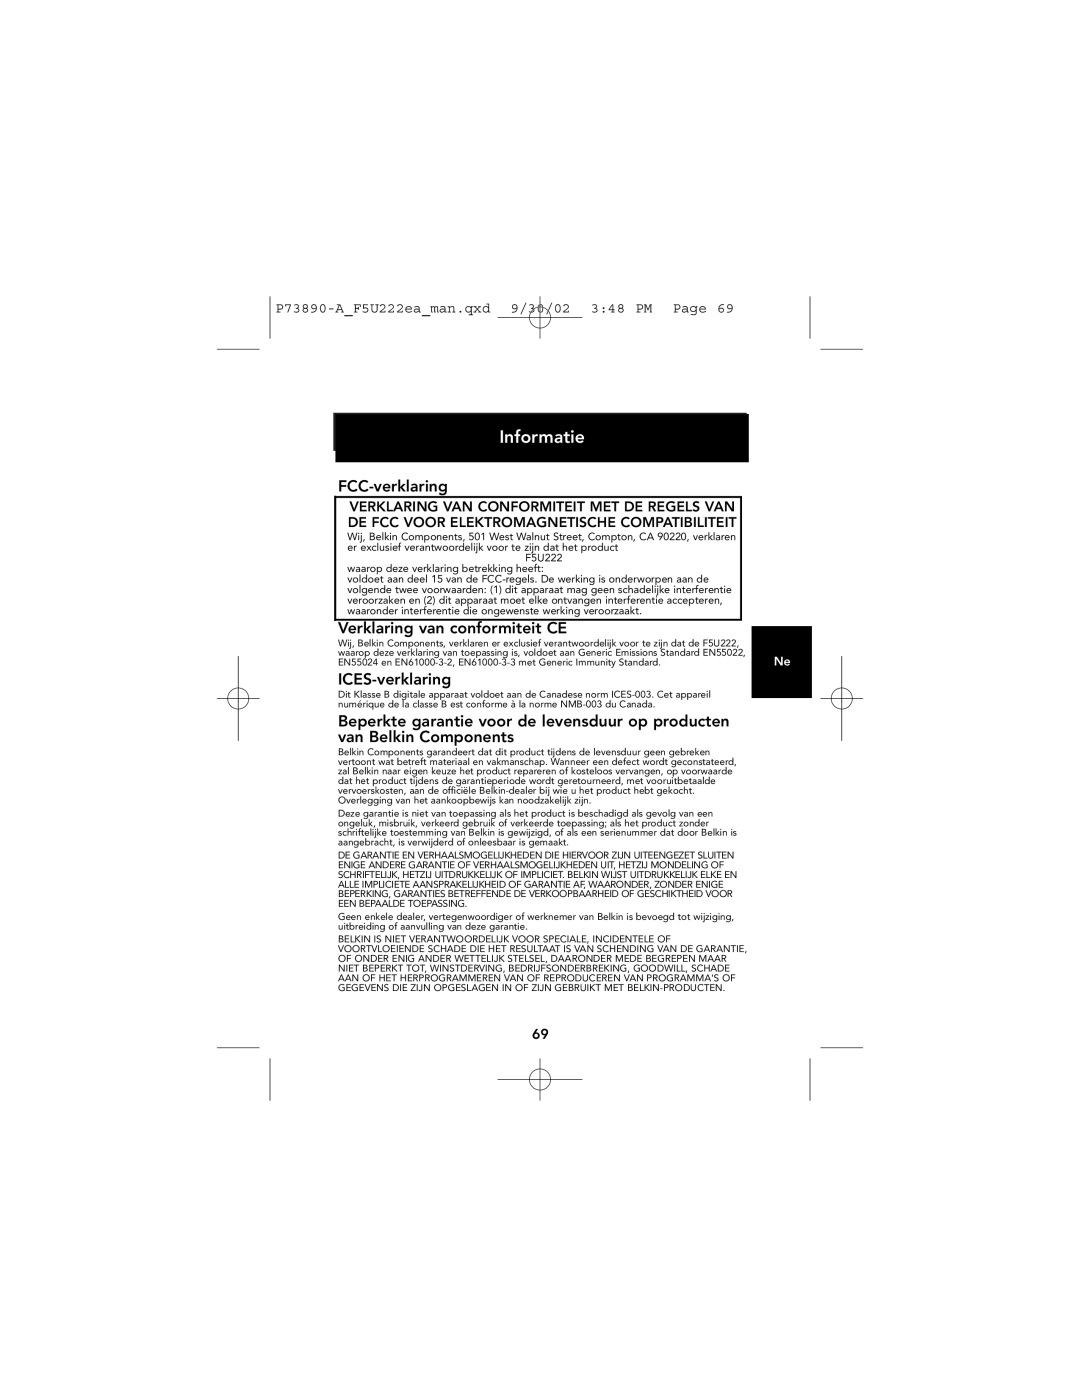 Belkin P73890EA-A manual Informatie, FCC-verklaring, Verklaring van conformiteit CE, ICES-verklaring 